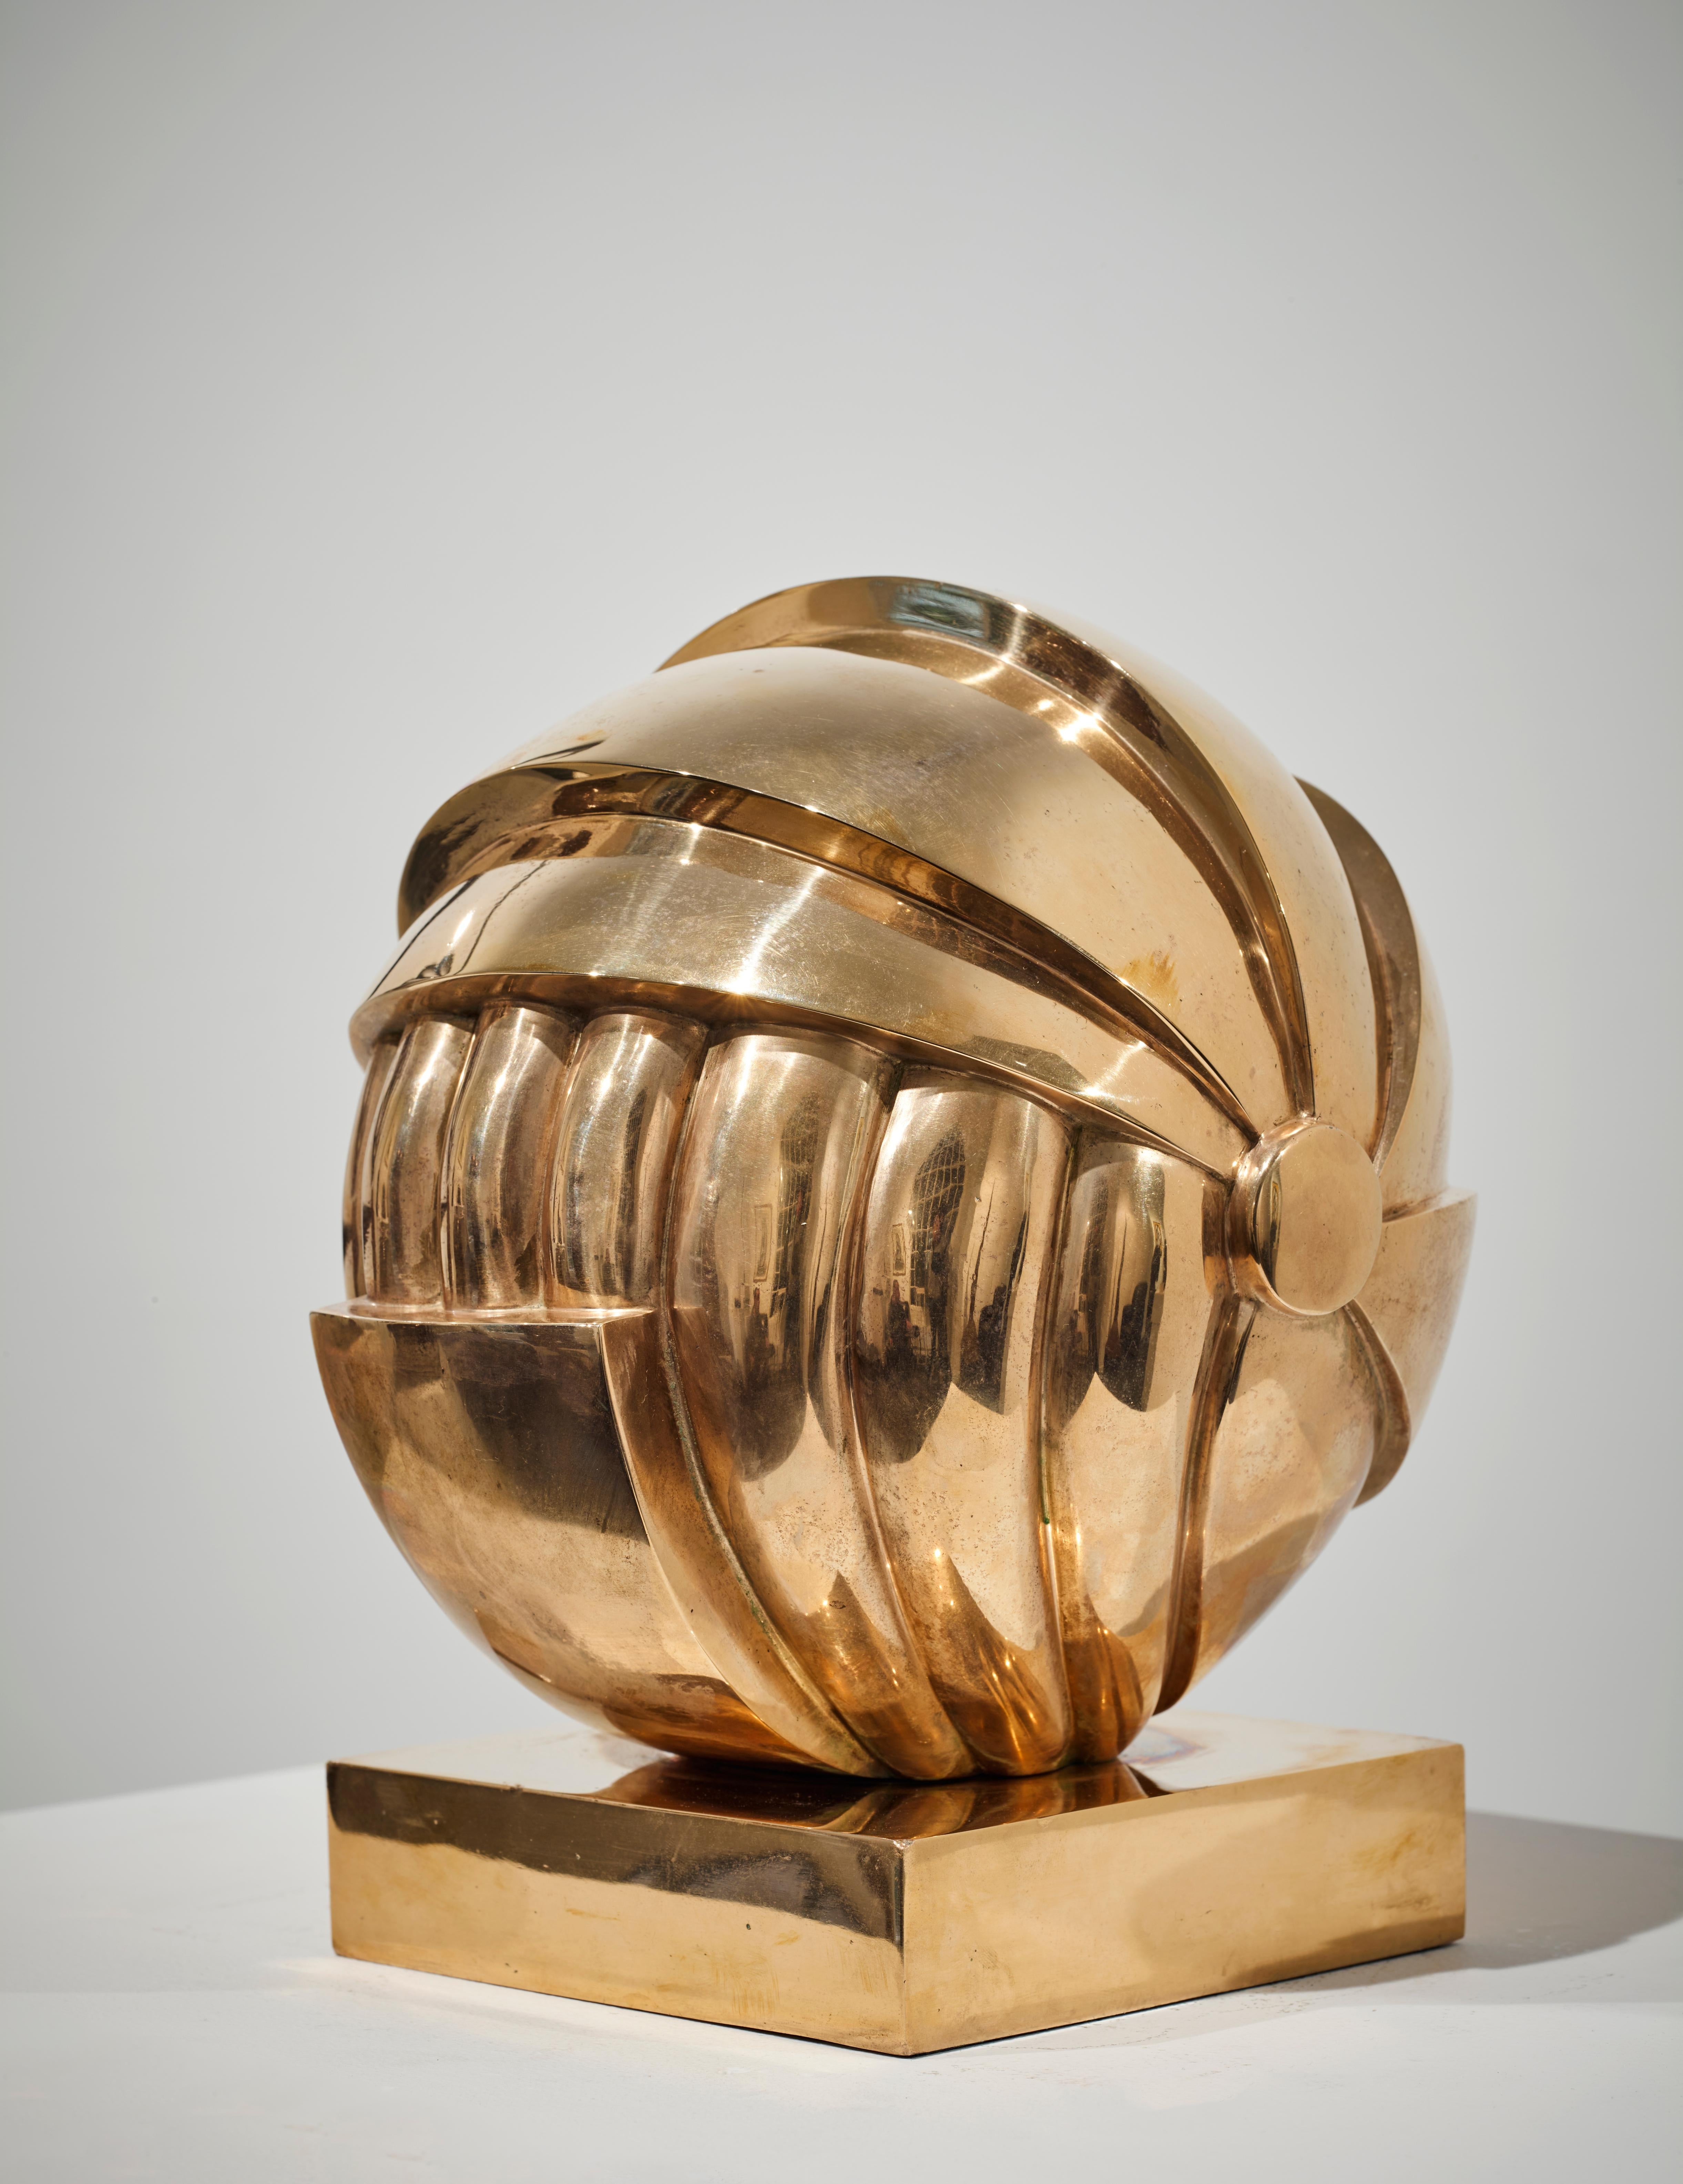 Olmetto - Contemporary Sculpture by Franco Adami